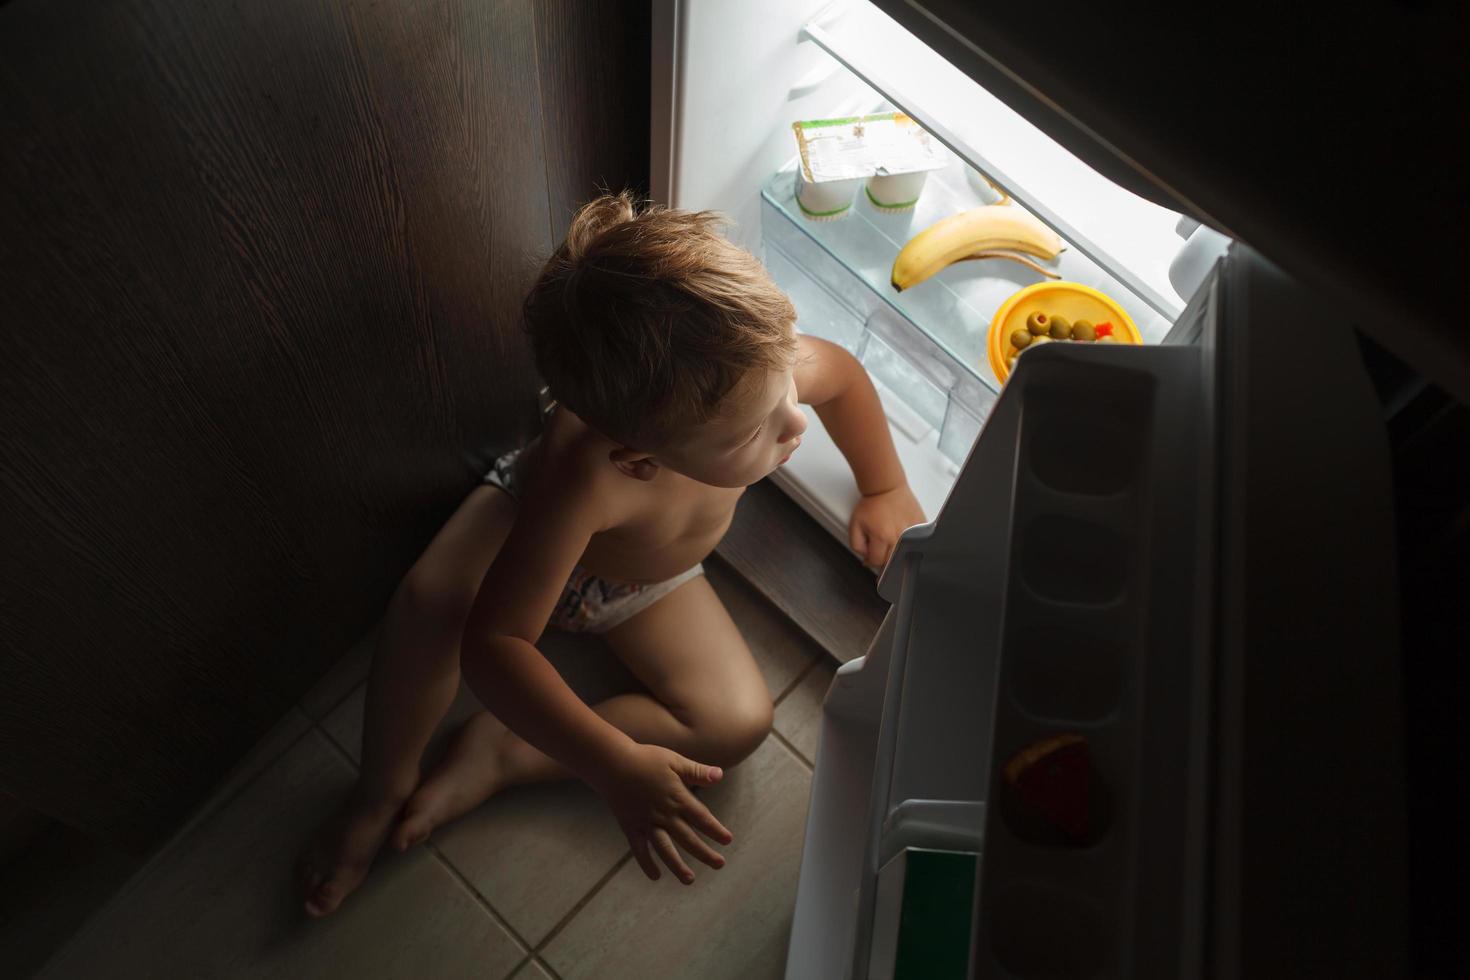 kleine jongen zit 's nachts in de buurt van een open koelkast foto